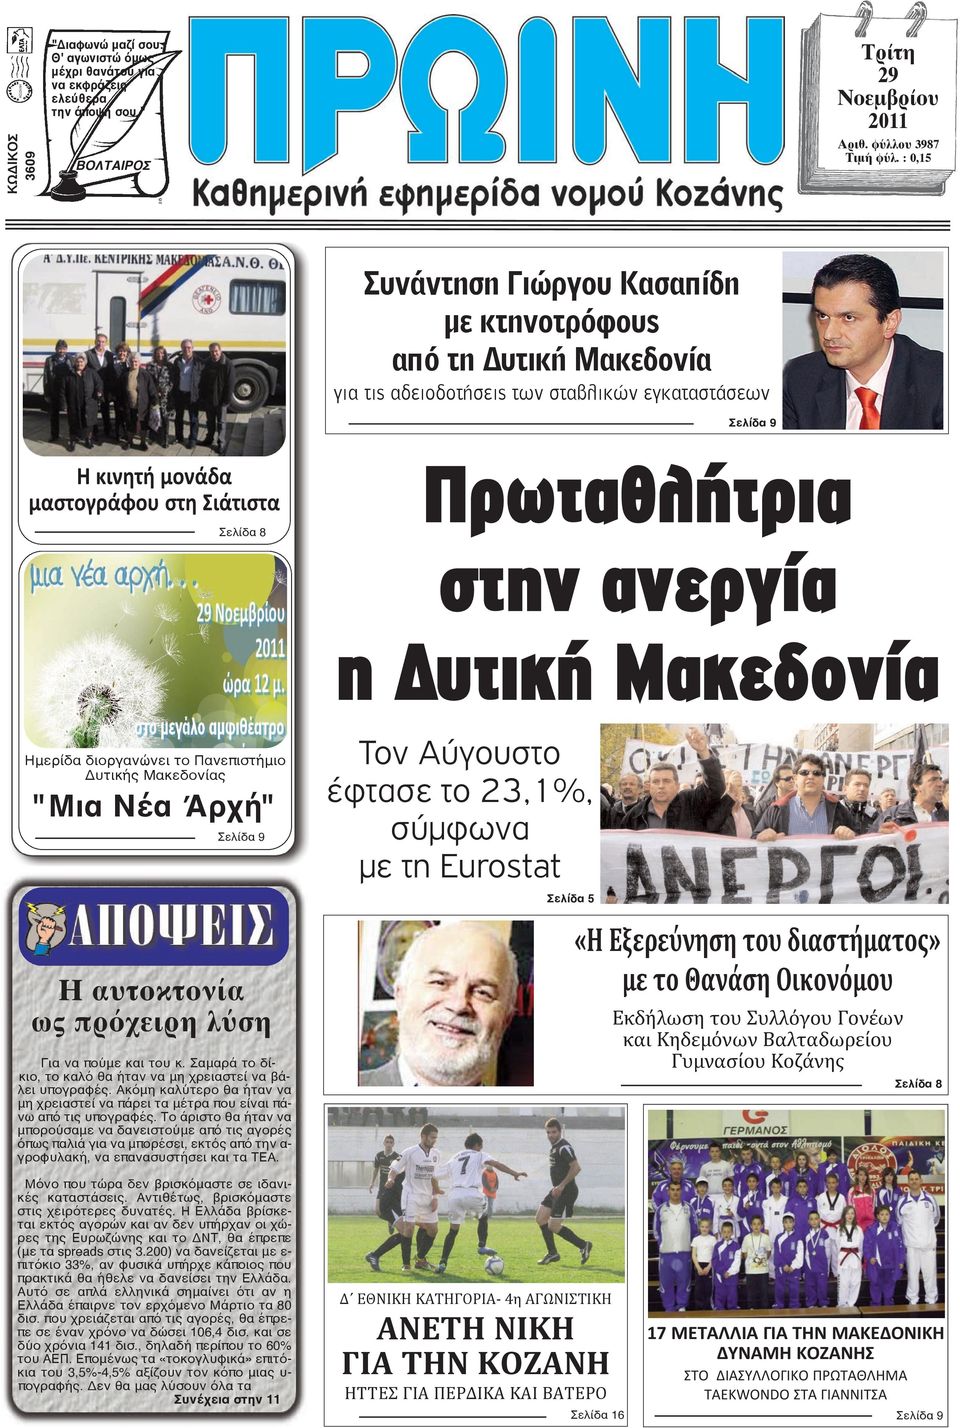 στην ανεργία η υτική Μακεδονία Ημερίδα διοργανώνει το Πανεπιστήμιο Δυτικής Μακεδονίας "Μια Νέα Άρχή" Σελίδα 9 Η αυτοκτονία ως πρόχειρη λύση Για να πούμε και του κ.